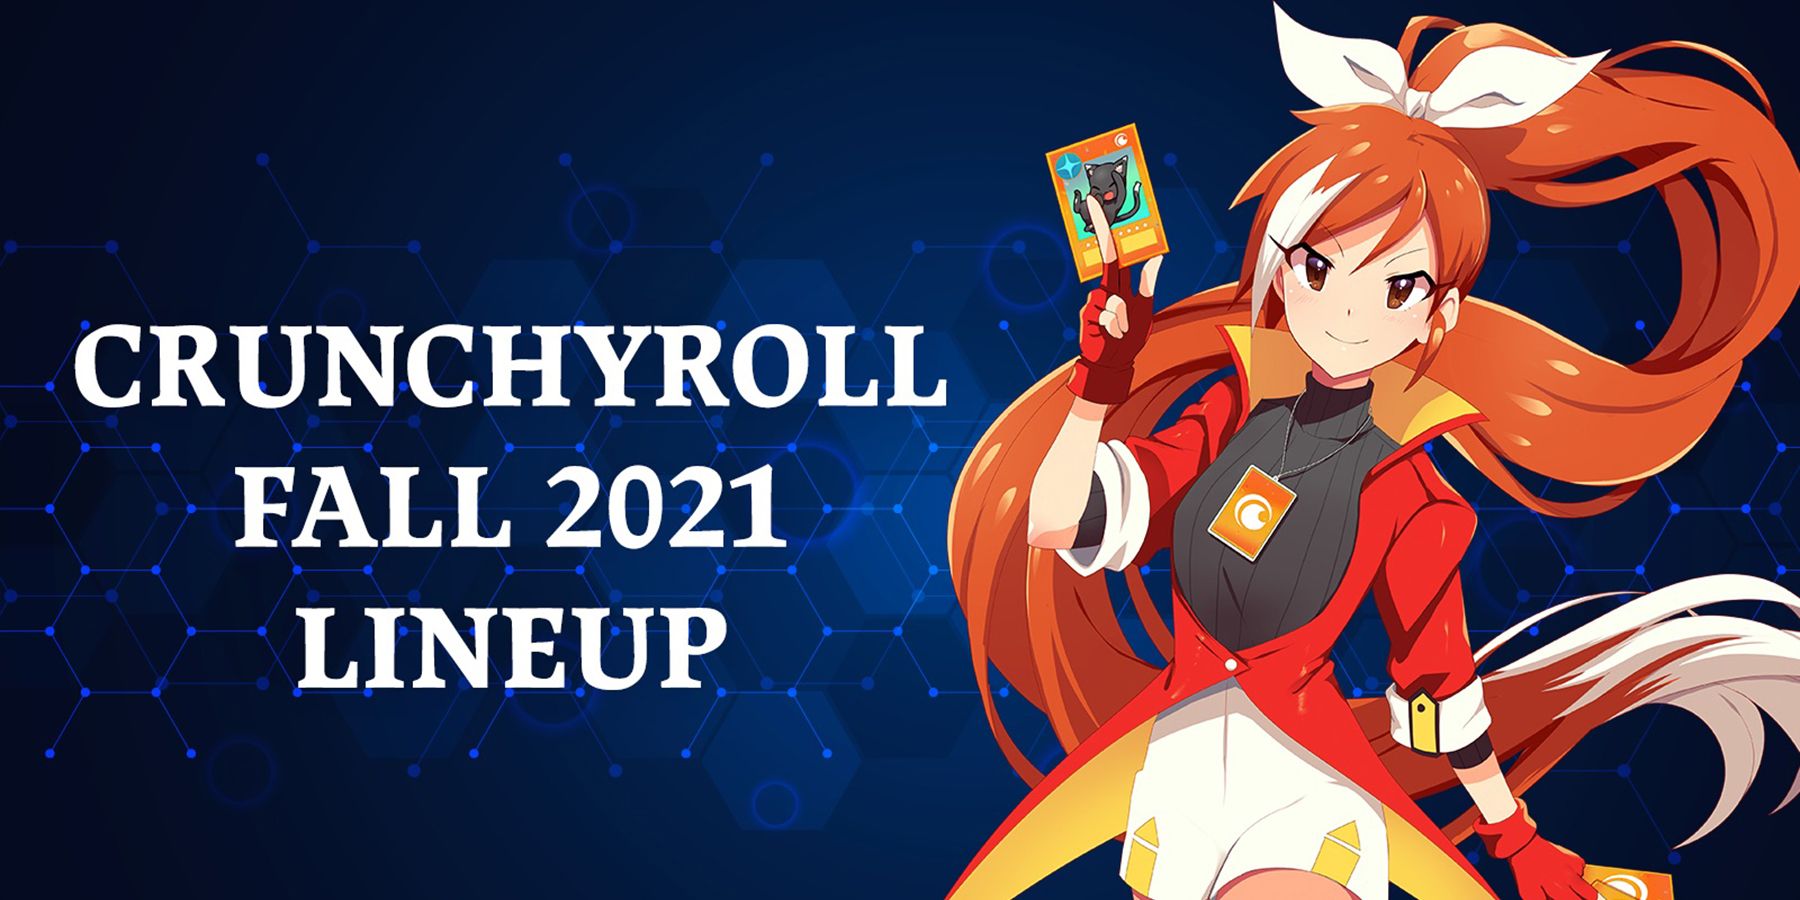 A Crunchyroll izgalmas 2021. őszi összeállítást mutat be, beleértve a Demon Slayert is